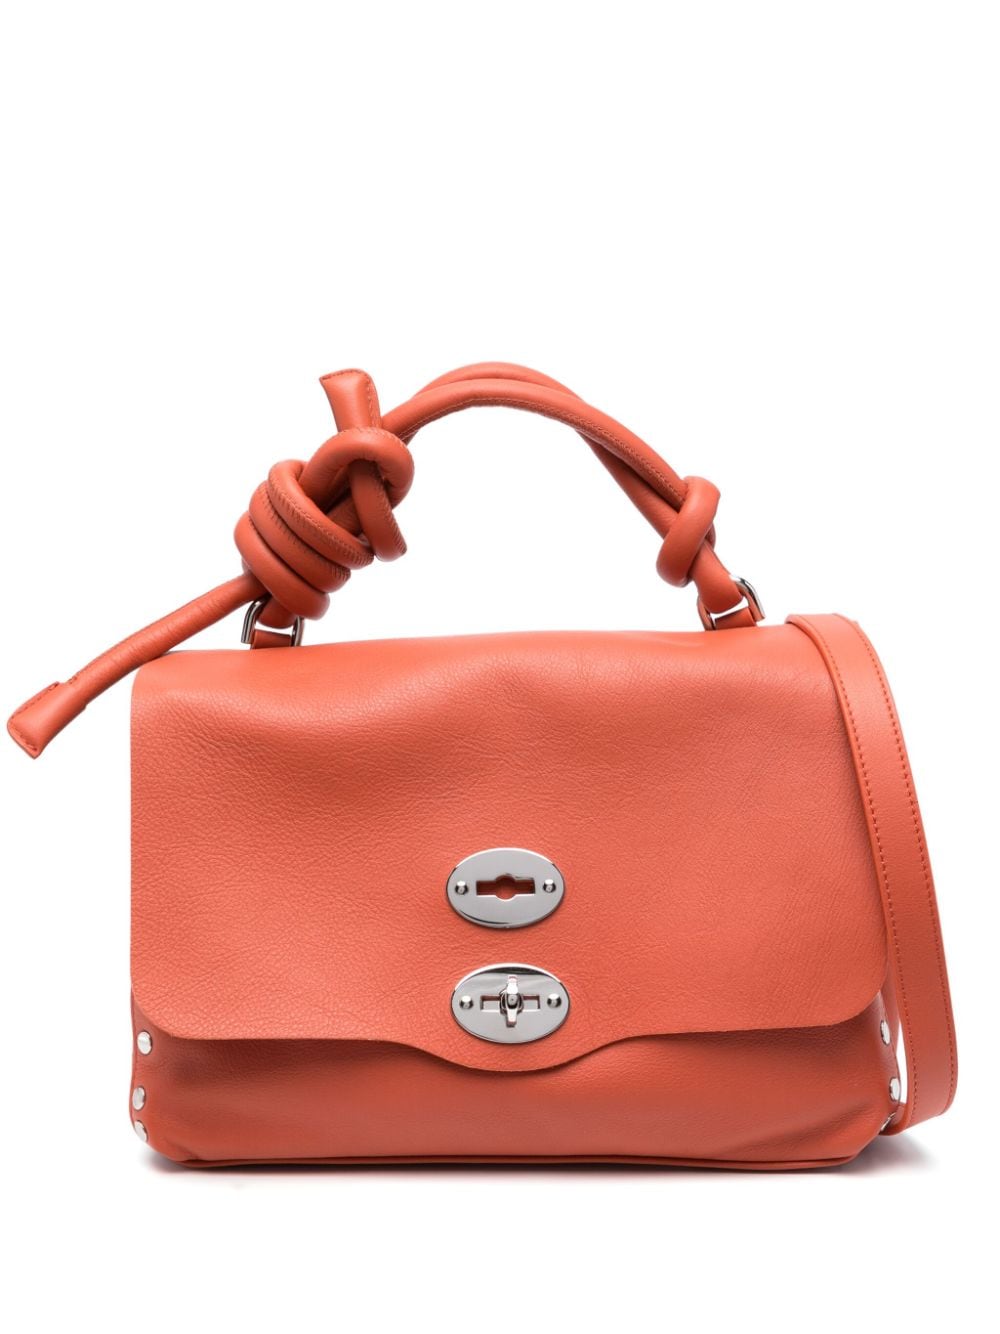 Zanellato Small Postina Leather Tote Bag In Orange